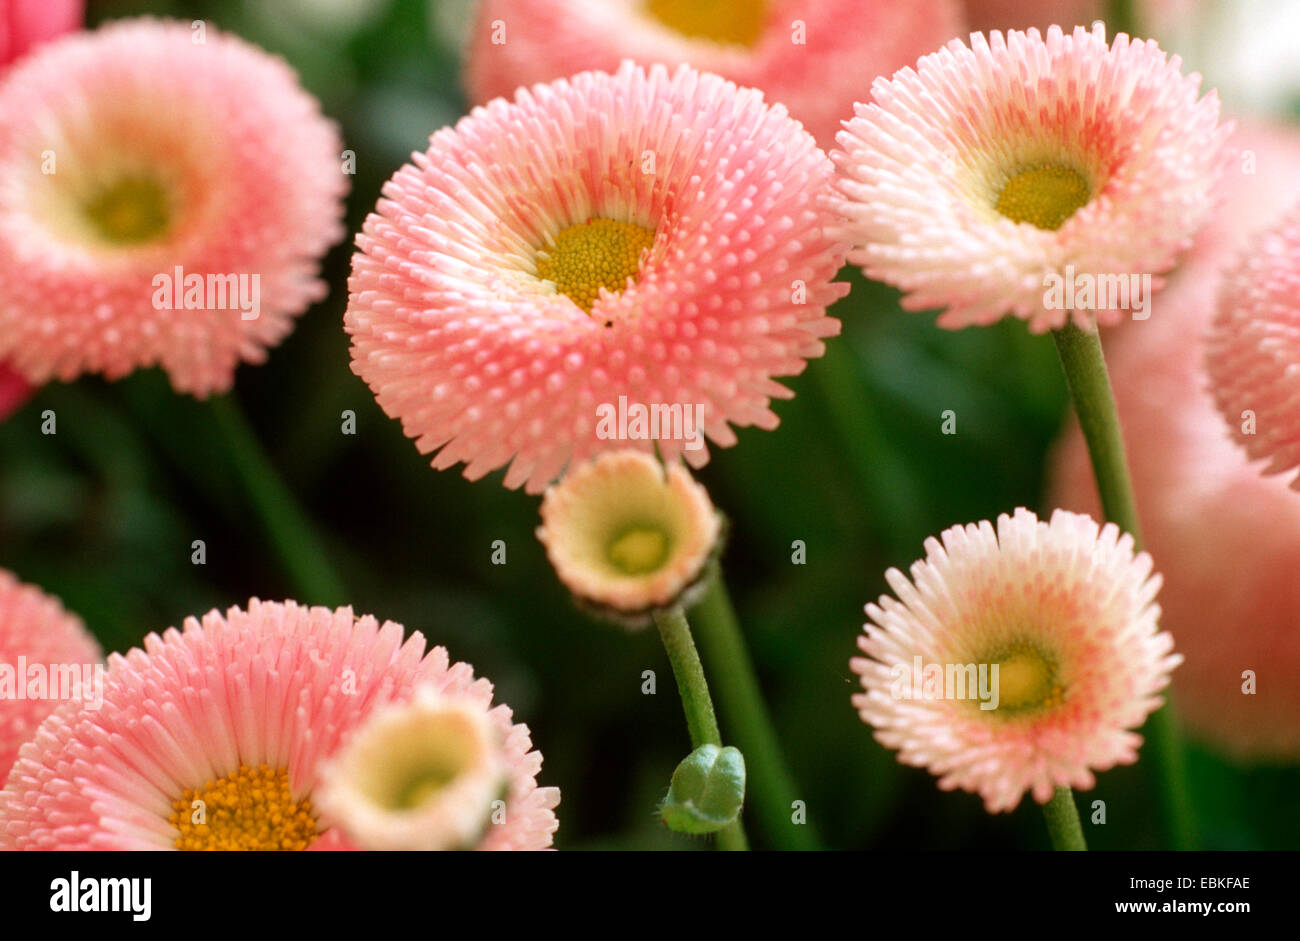 common daisy, lawn daisy, English daisy (Bellis perennis 'Pomponette Rosa', Bellis perennis Pomponette Rosa), cultivar Pomponette Rosa Stock Photo